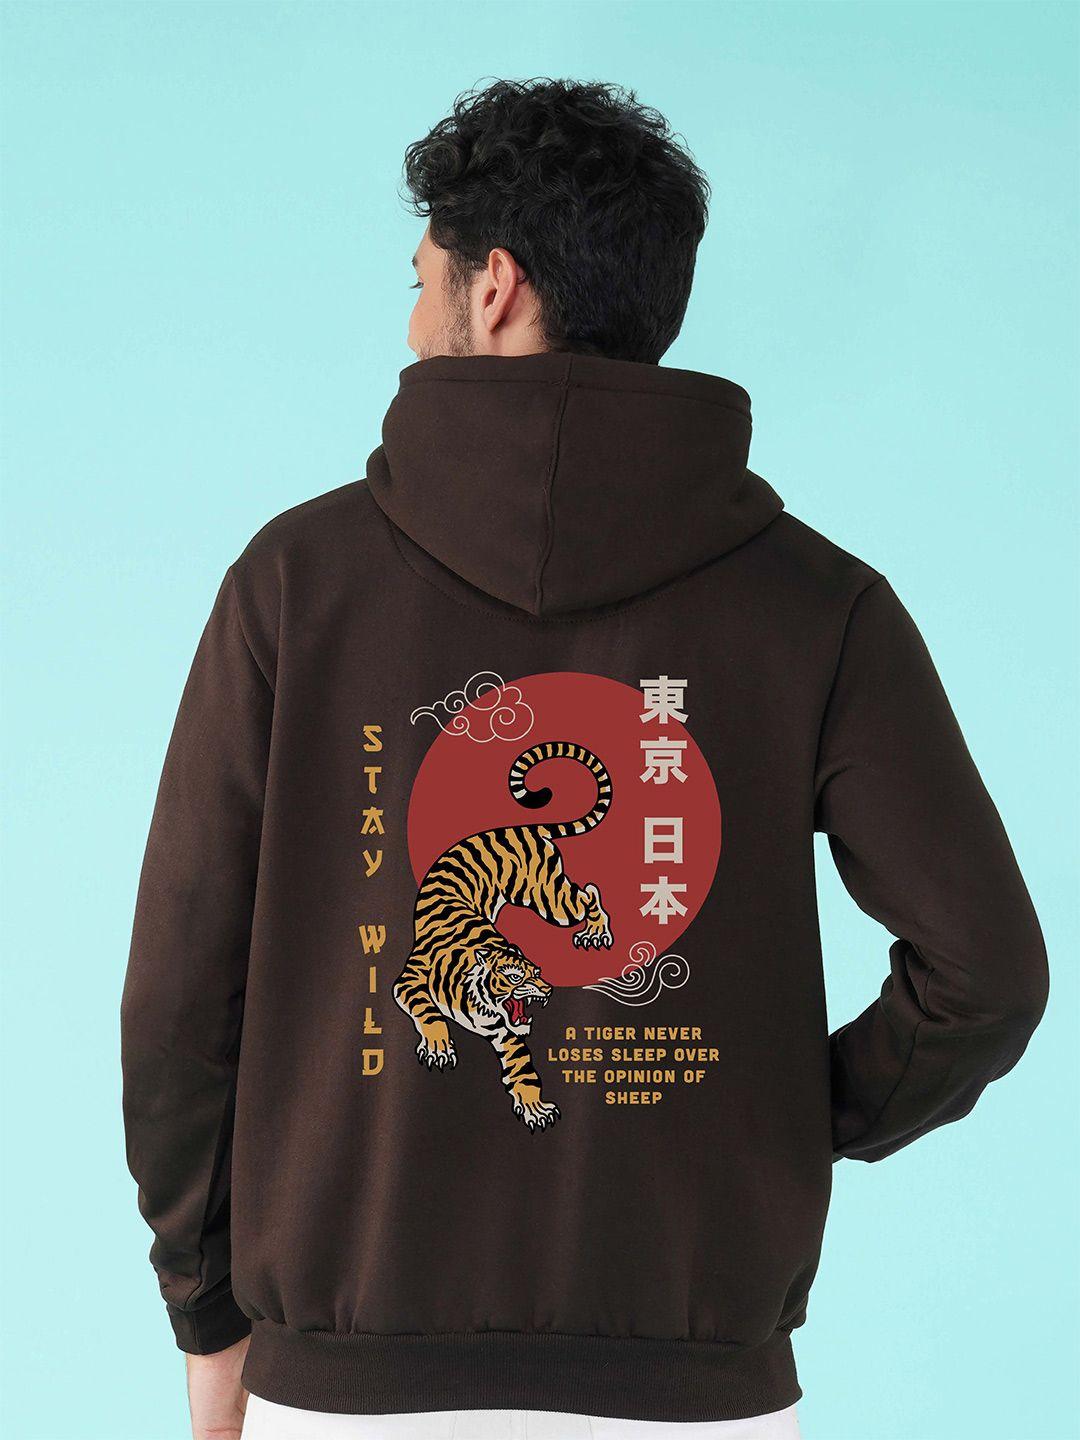 nusyl graphic printed hooded fleece sweatshirt